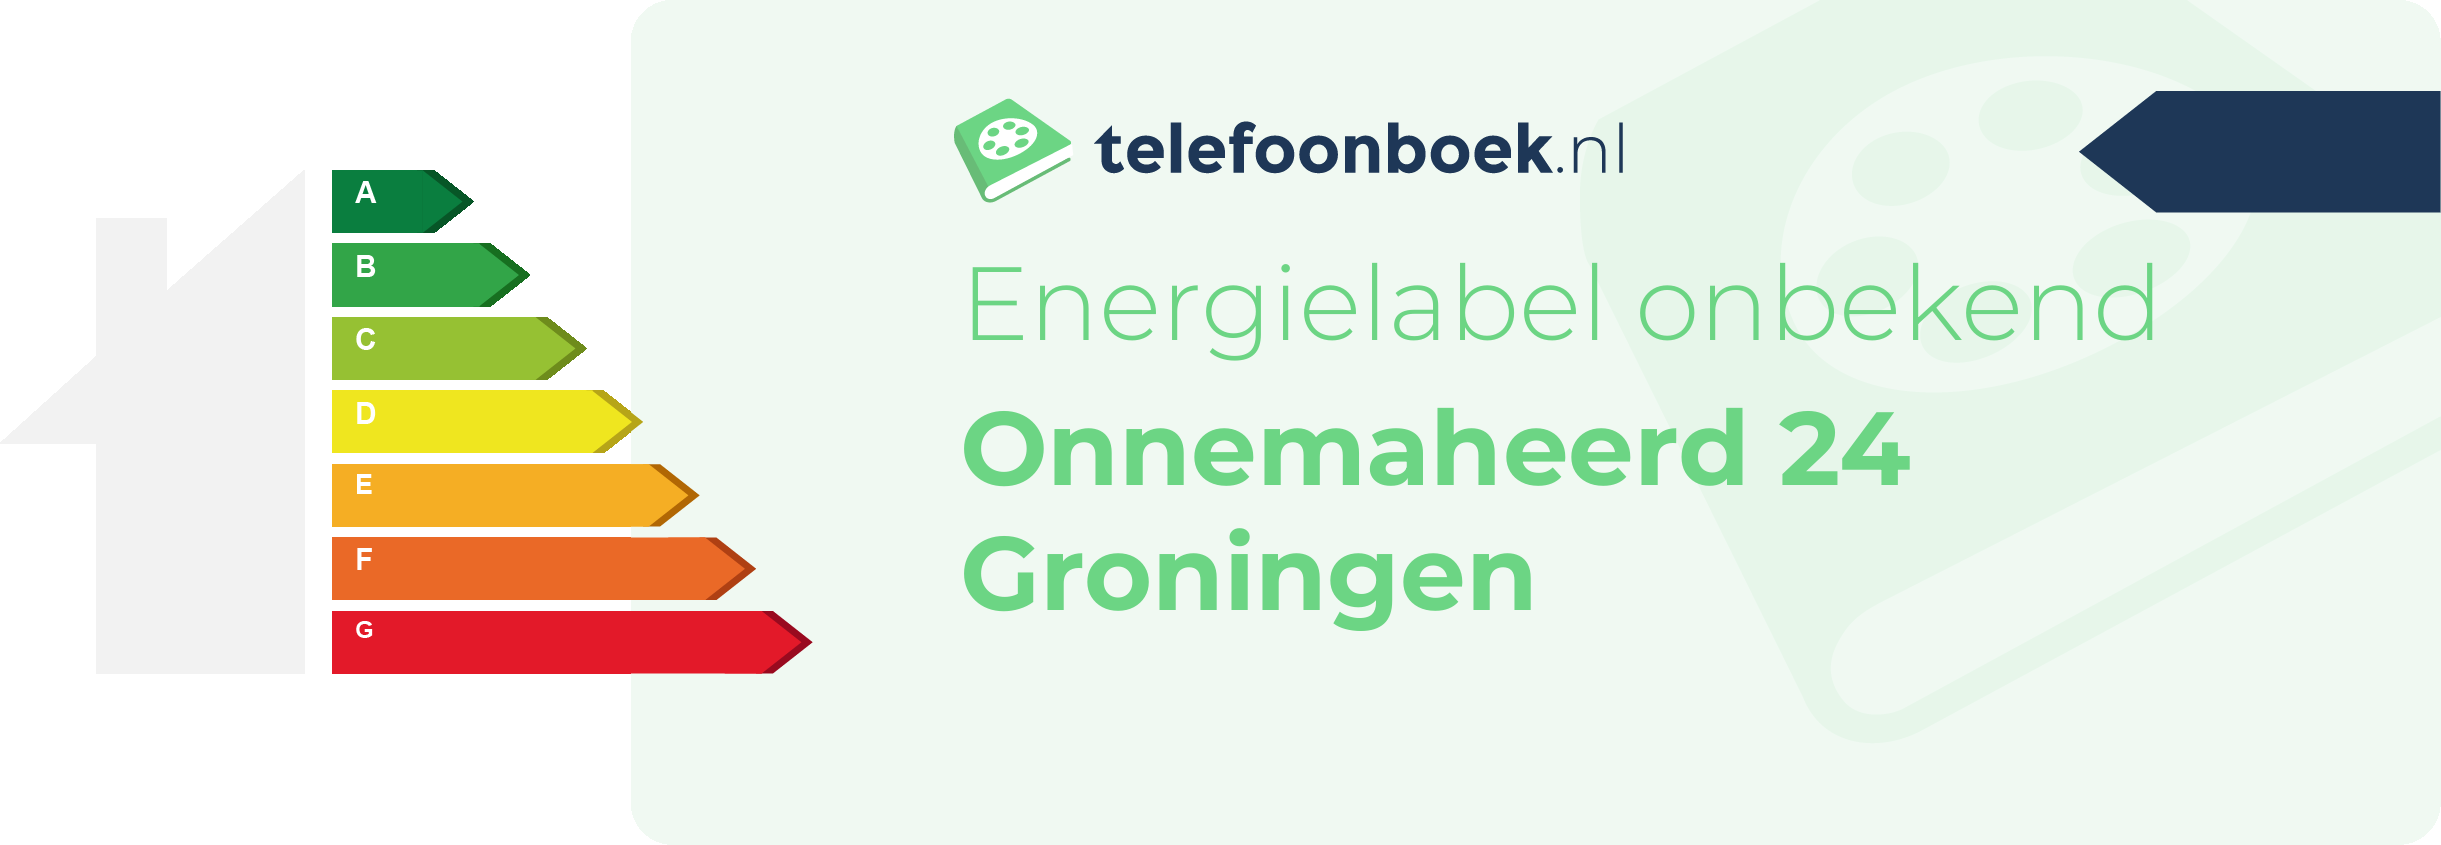 Energielabel Onnemaheerd 24 Groningen